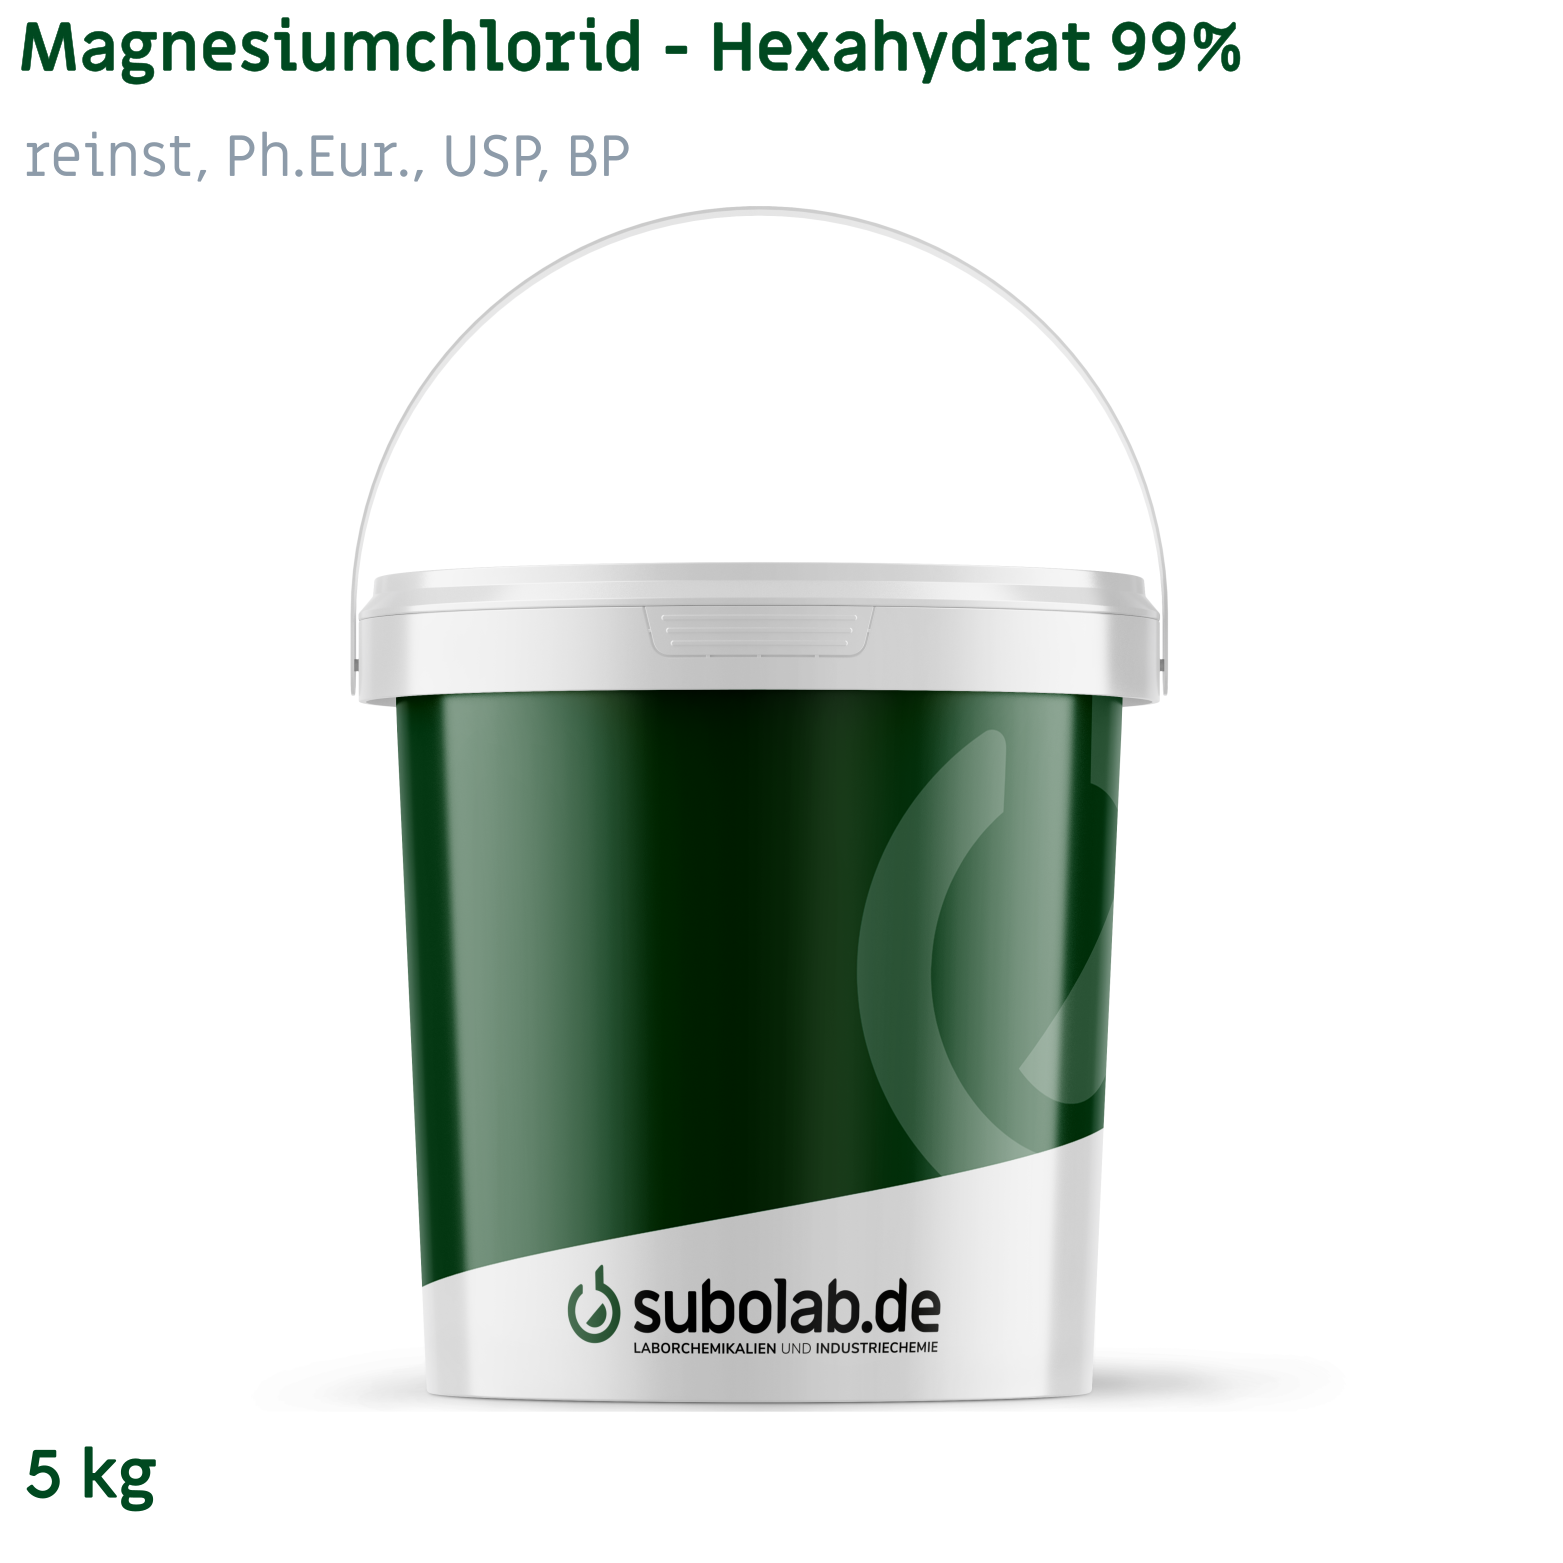 Bild von Magnesiumchlorid - Hexahydrat 99% reinst, Ph.Eur., USP, BP (5 kg)